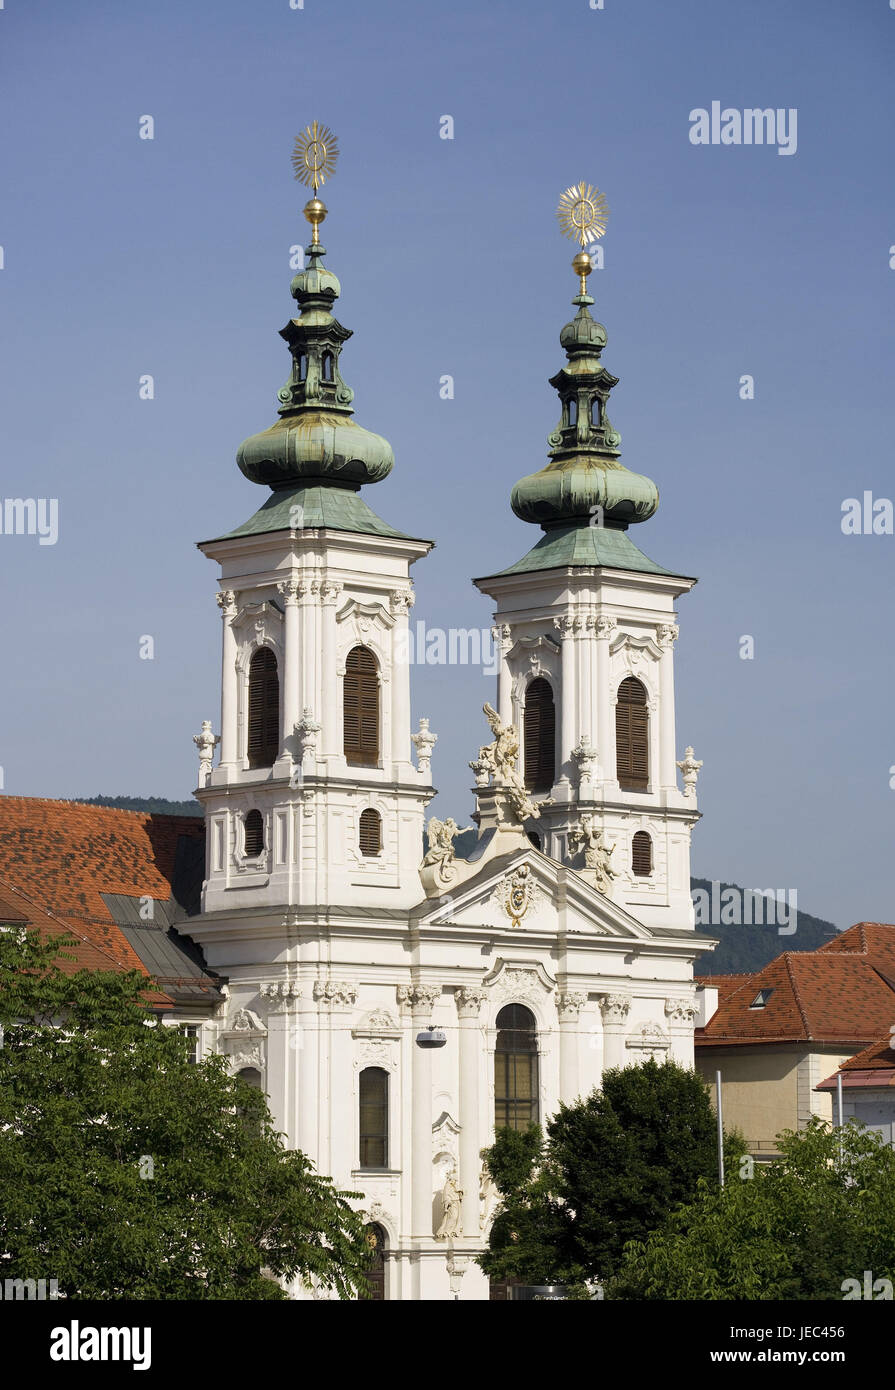 Austria, Styria, Graz, pilgrimage church Mariahilf, Stock Photo